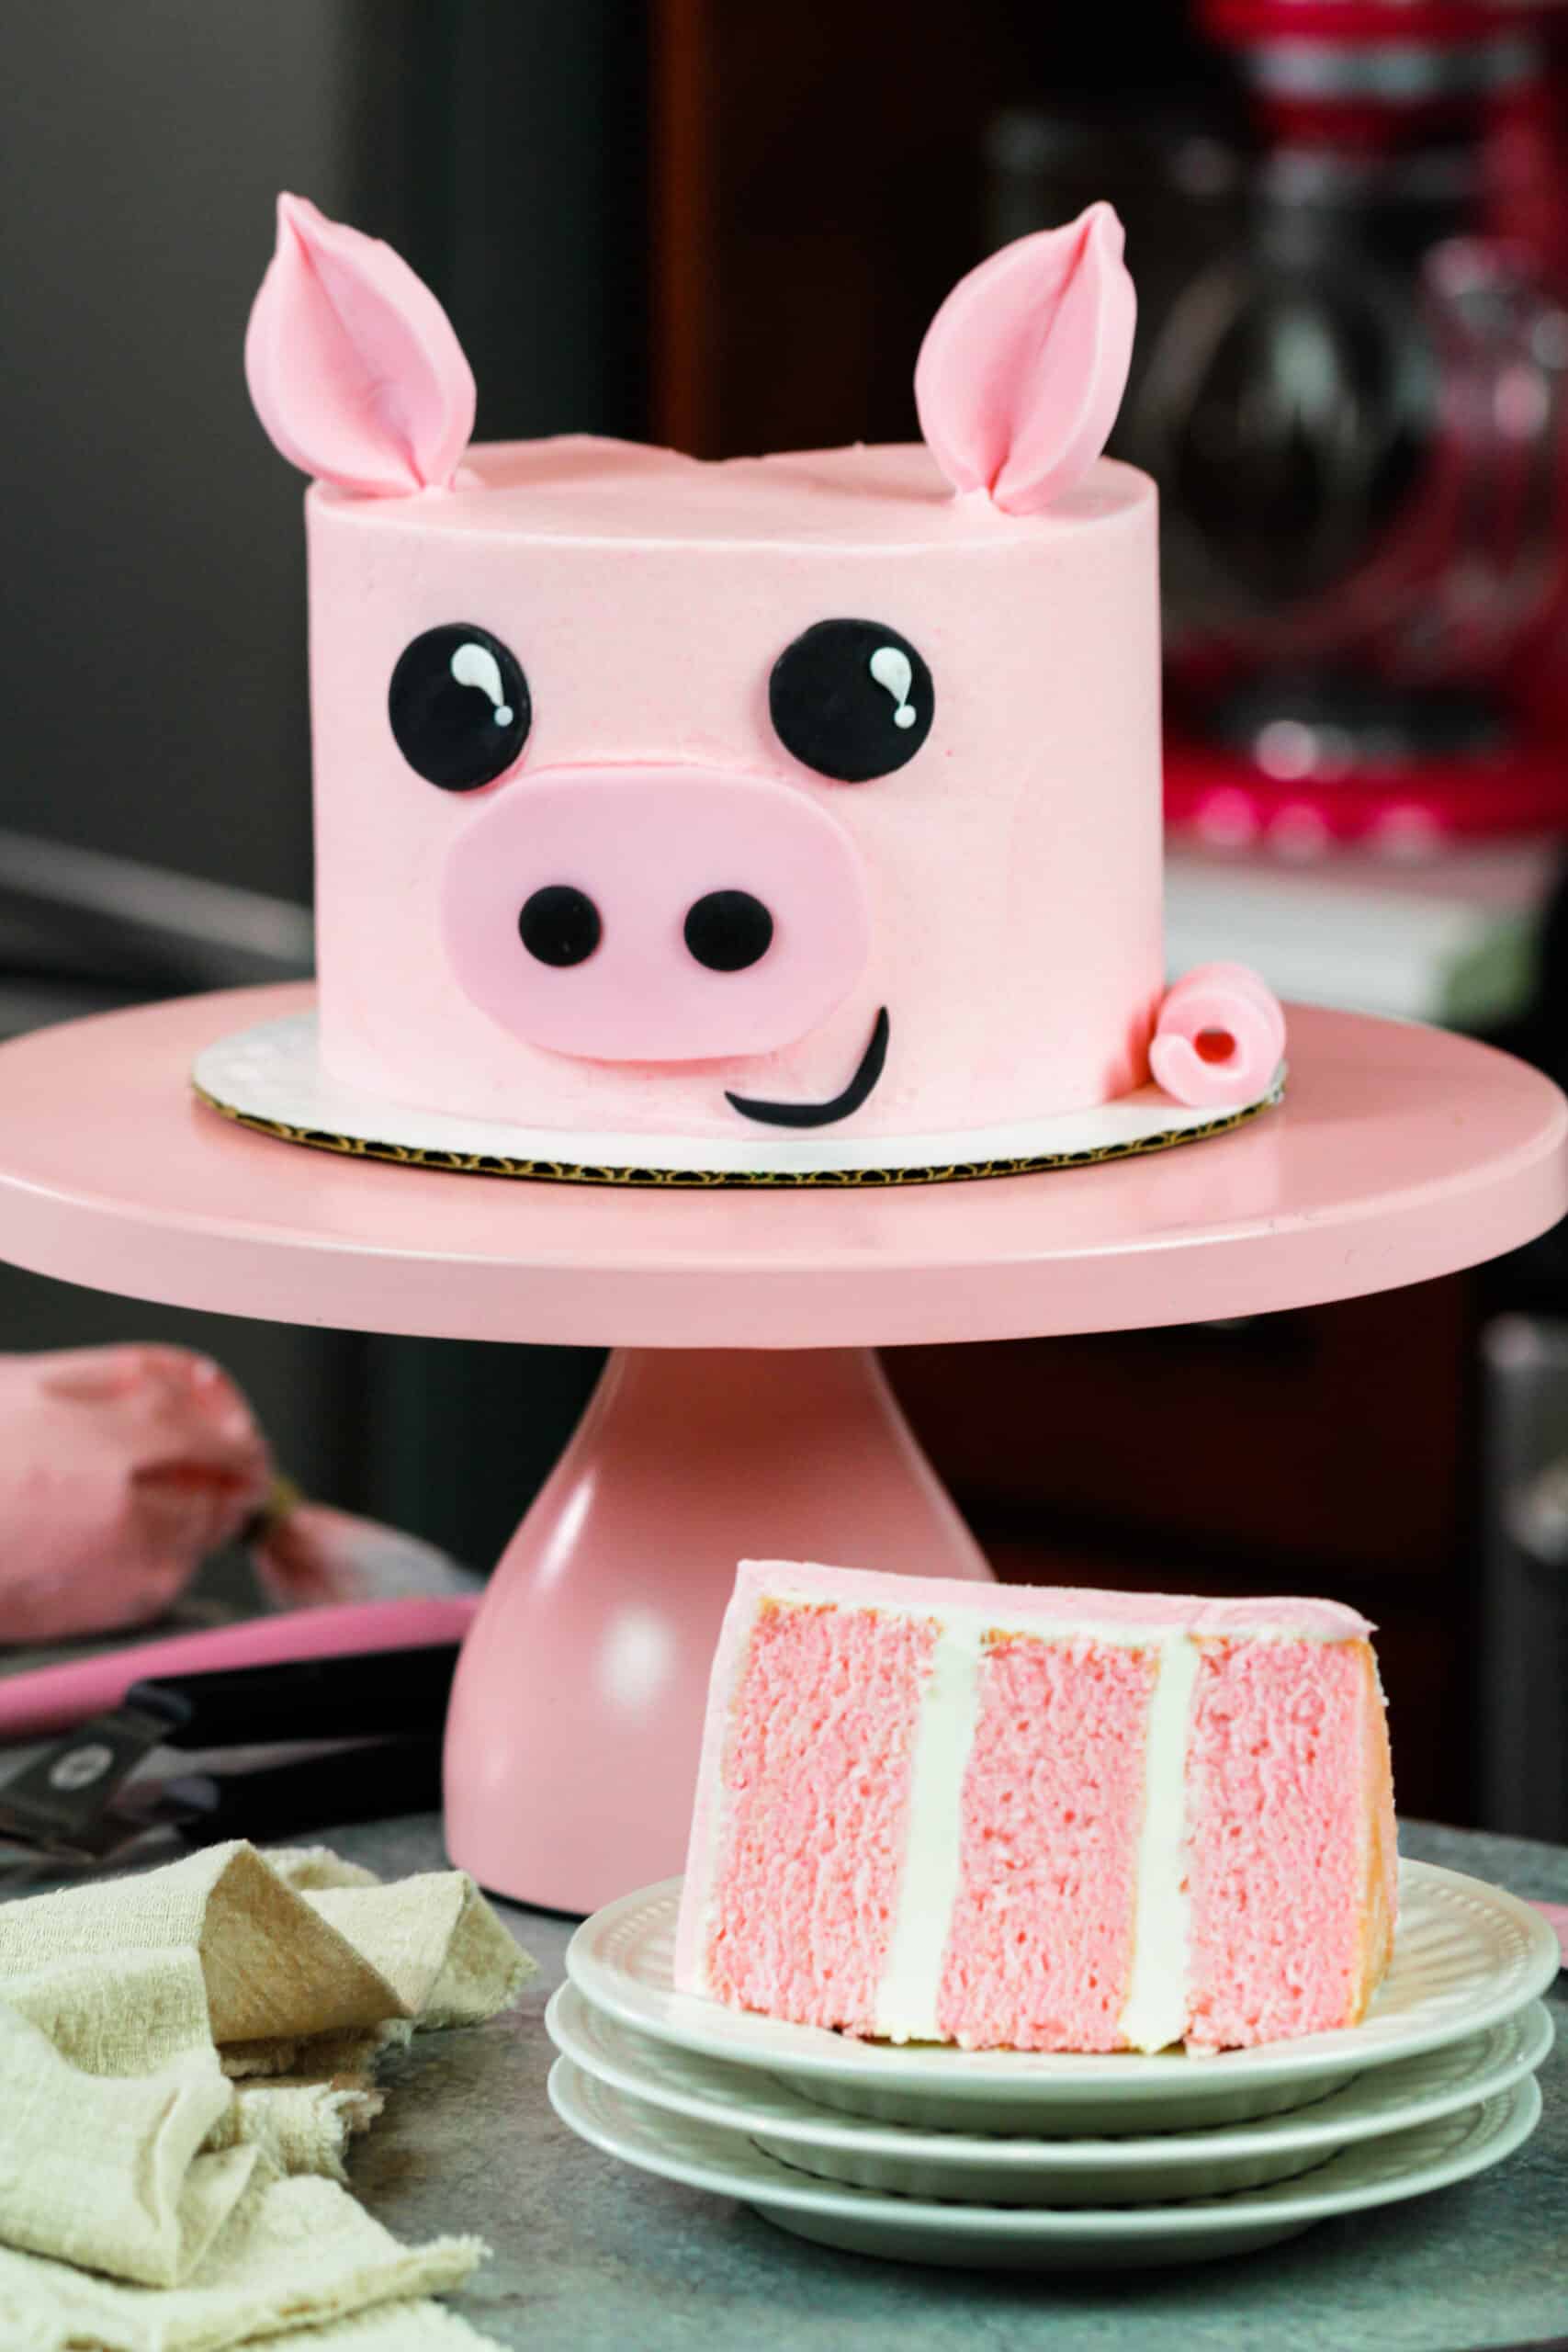 37 Pretty Cake Ideas For Your Next Celebration : Elegant two tone cake |  Elegant birthday cakes, Beautiful birthday cakes, Pretty cakes